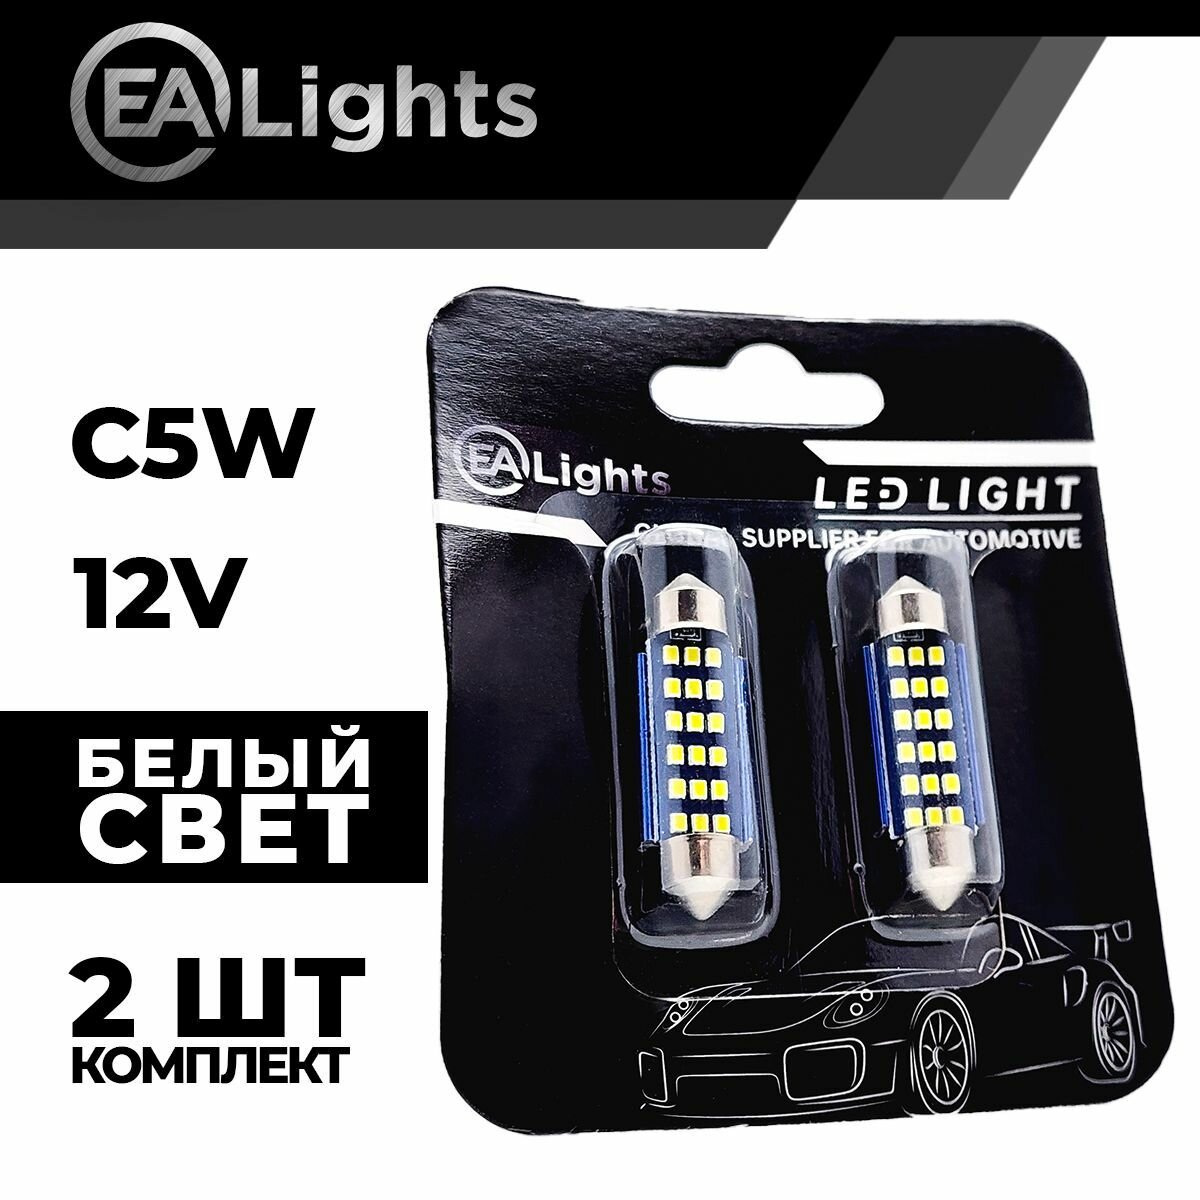 Автомобильная светодиодная LED лампа C5W 41 мм (чип 2016-15) для подсветки салона, багажника, номерного знака, 12в белый свет, 2 шт